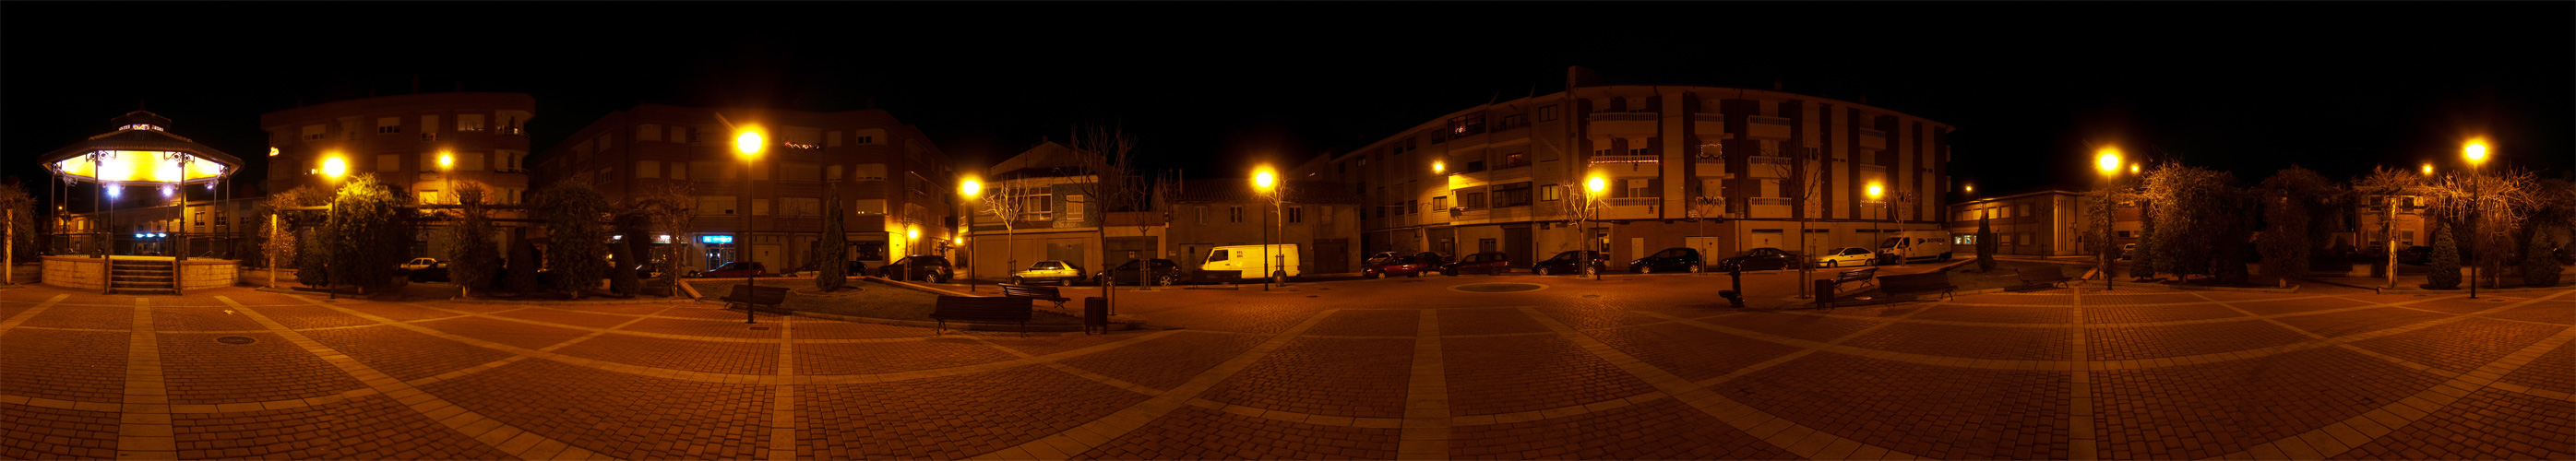 Panorámica Plaza de la Fuente nocturna